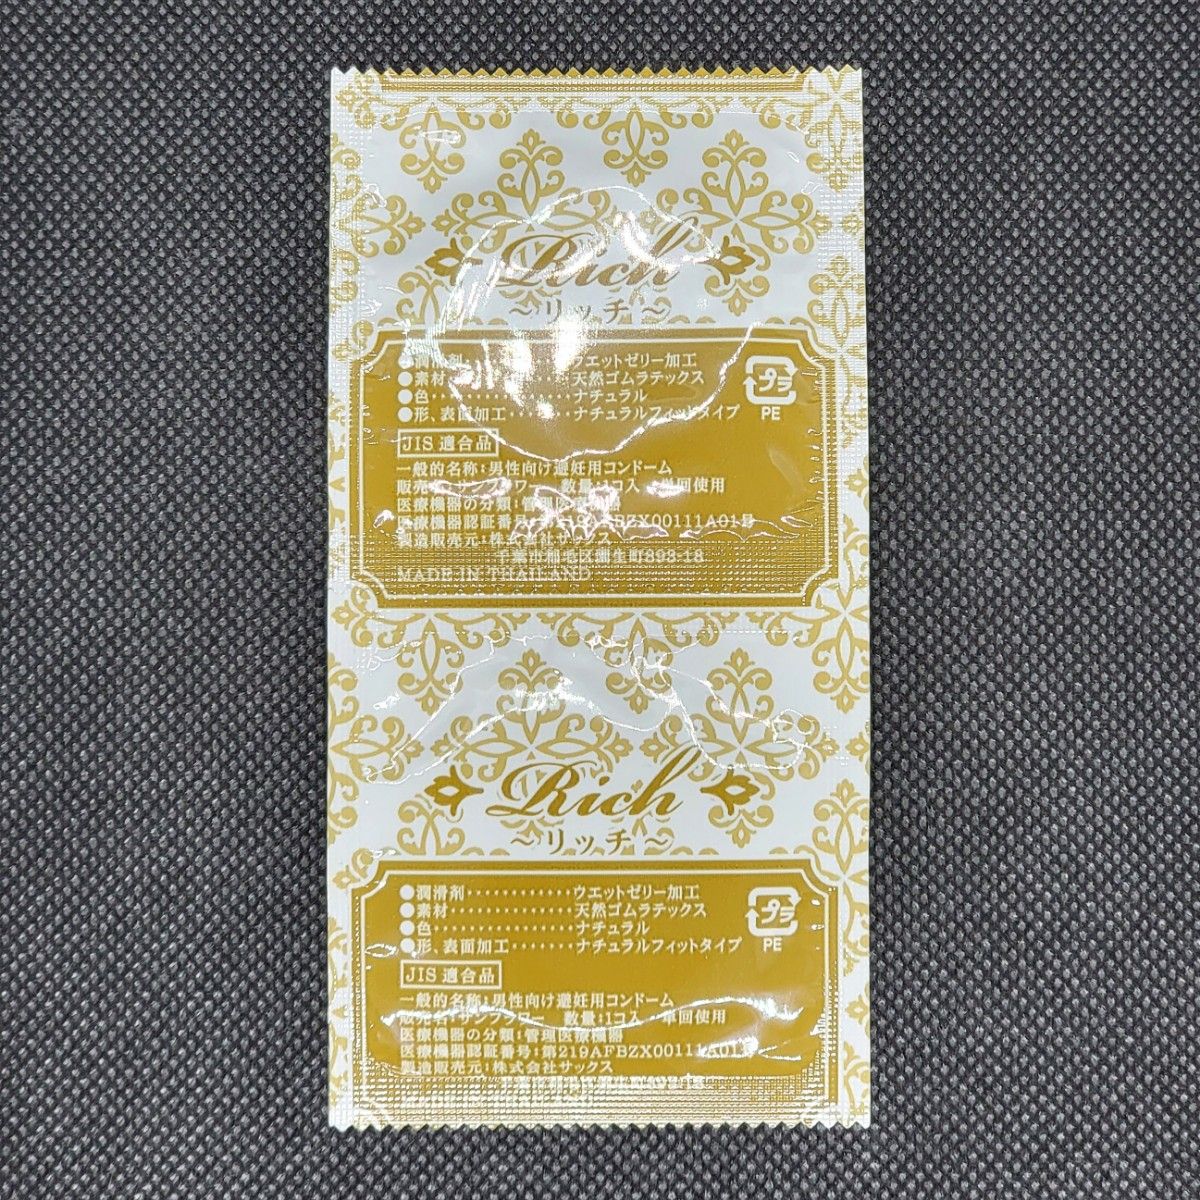  業務用コンドーム サックス Rich(リッチ) 003 Mサイズ 144個 0.03mm ジャパンメディカル スキン 避妊具